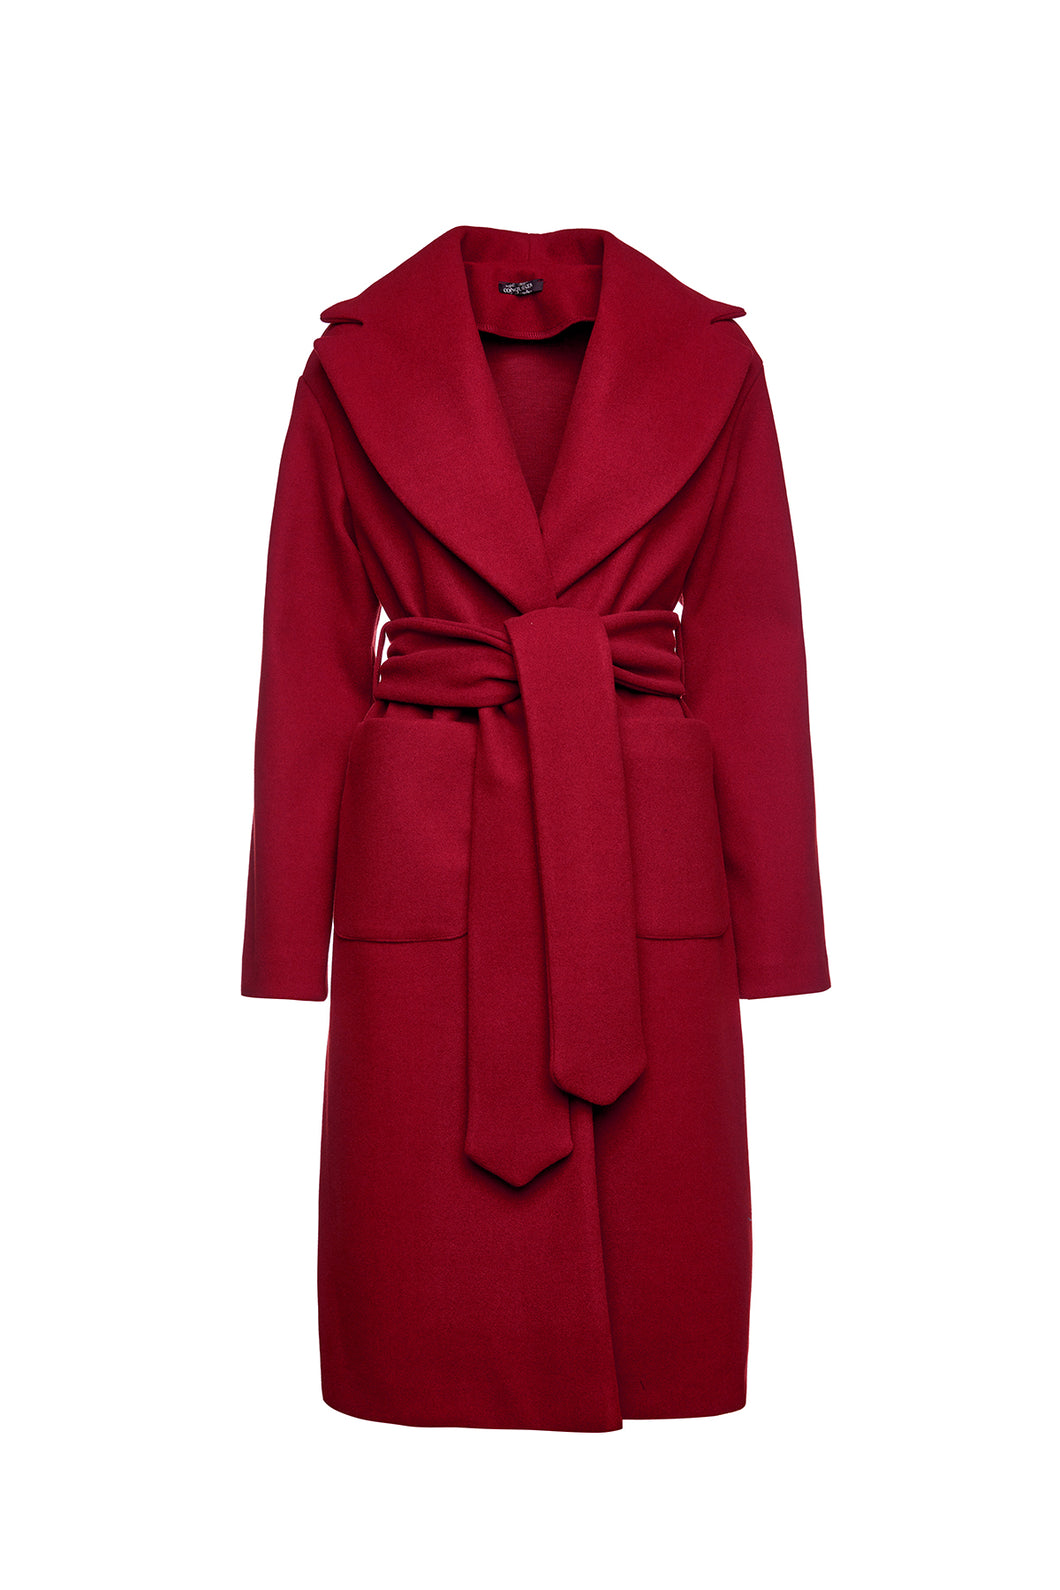 Long Dark Red Faux Mouflon Coat with Belt